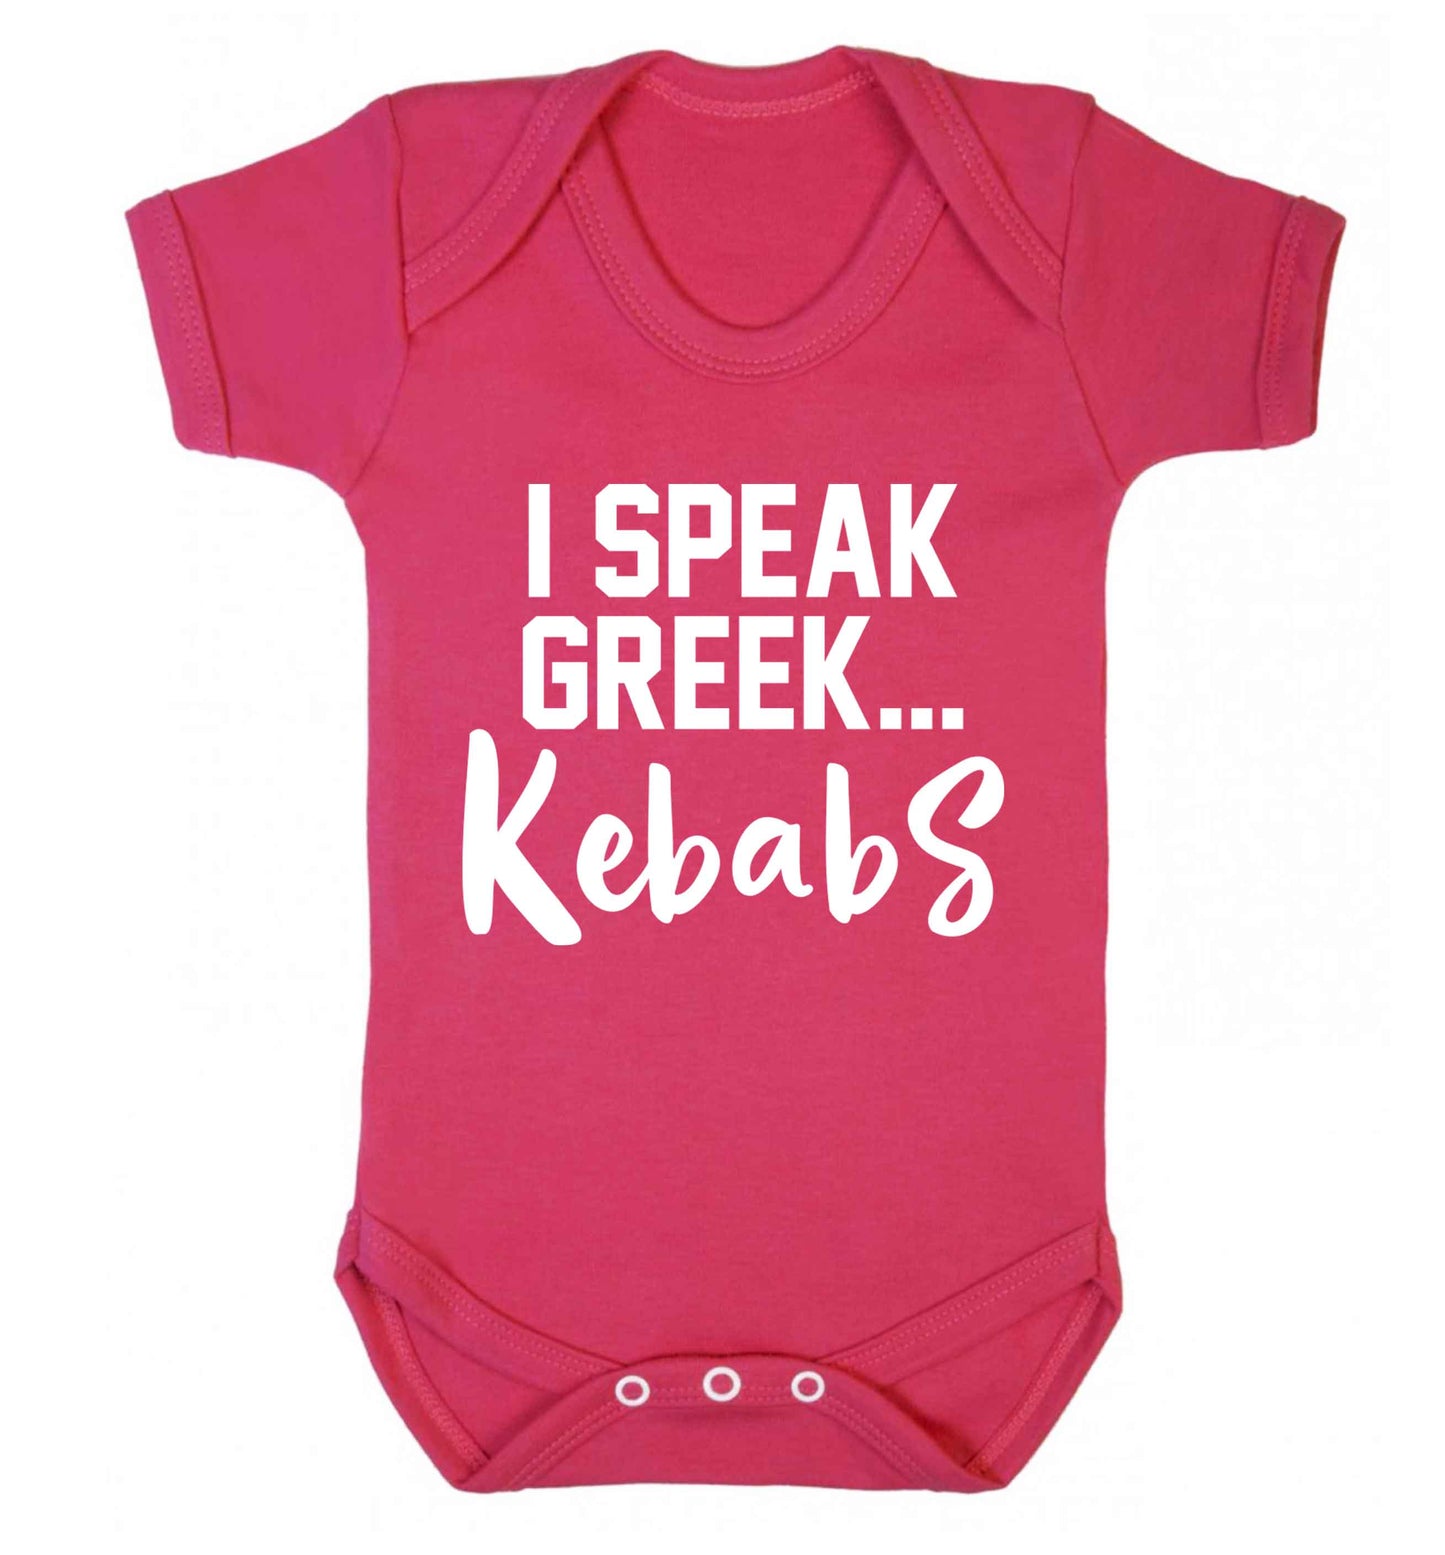 I speak Greek...kebabs Baby Vest dark pink 18-24 months